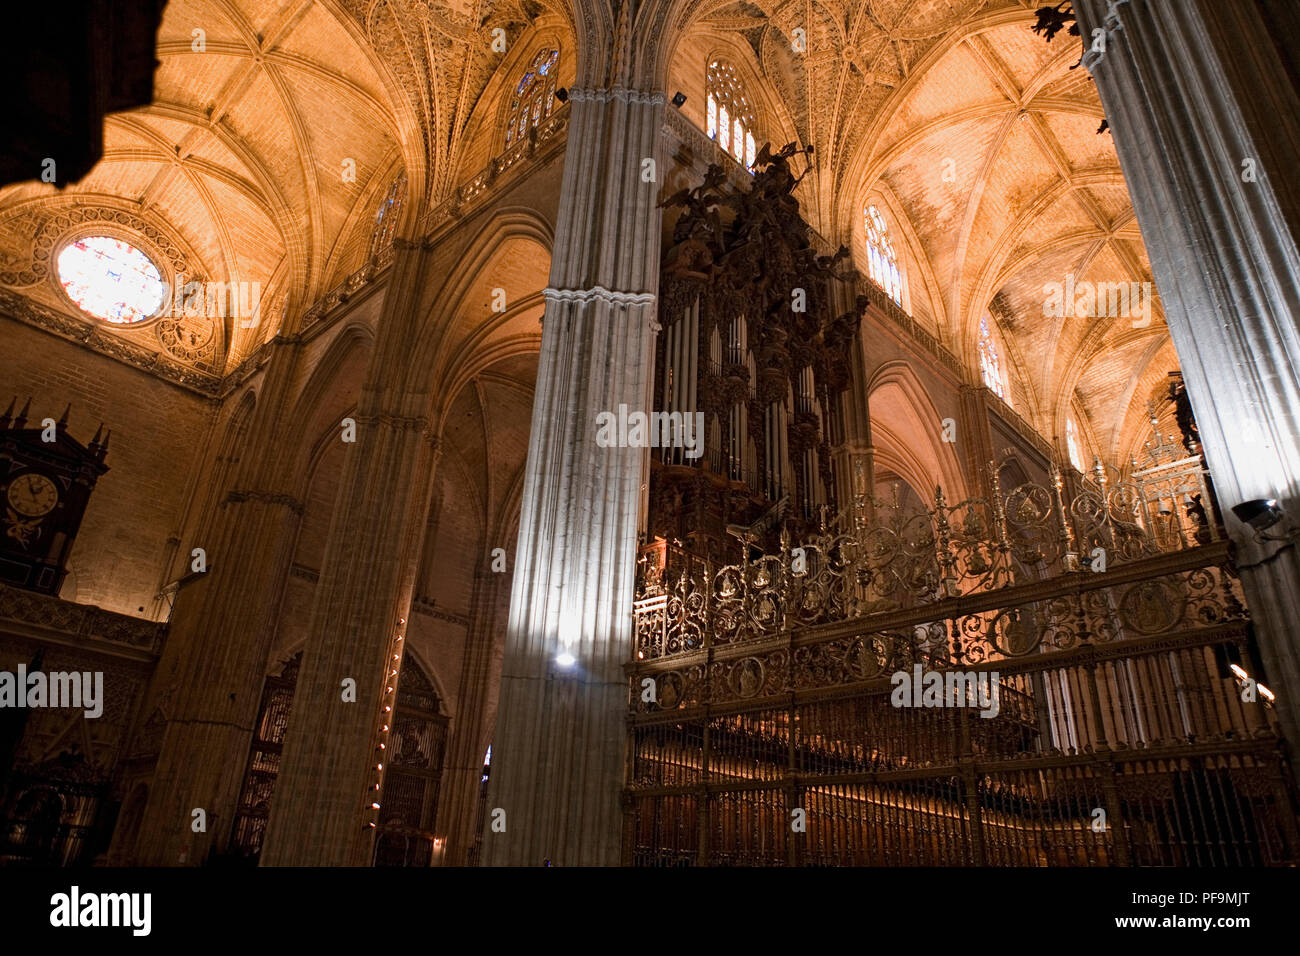 Chor und Orgel, Catedral de Santa María de la Sede, Sevilla, Spanien/Sevilla Dom ist die größte gotische Kirche der Welt Stockfoto